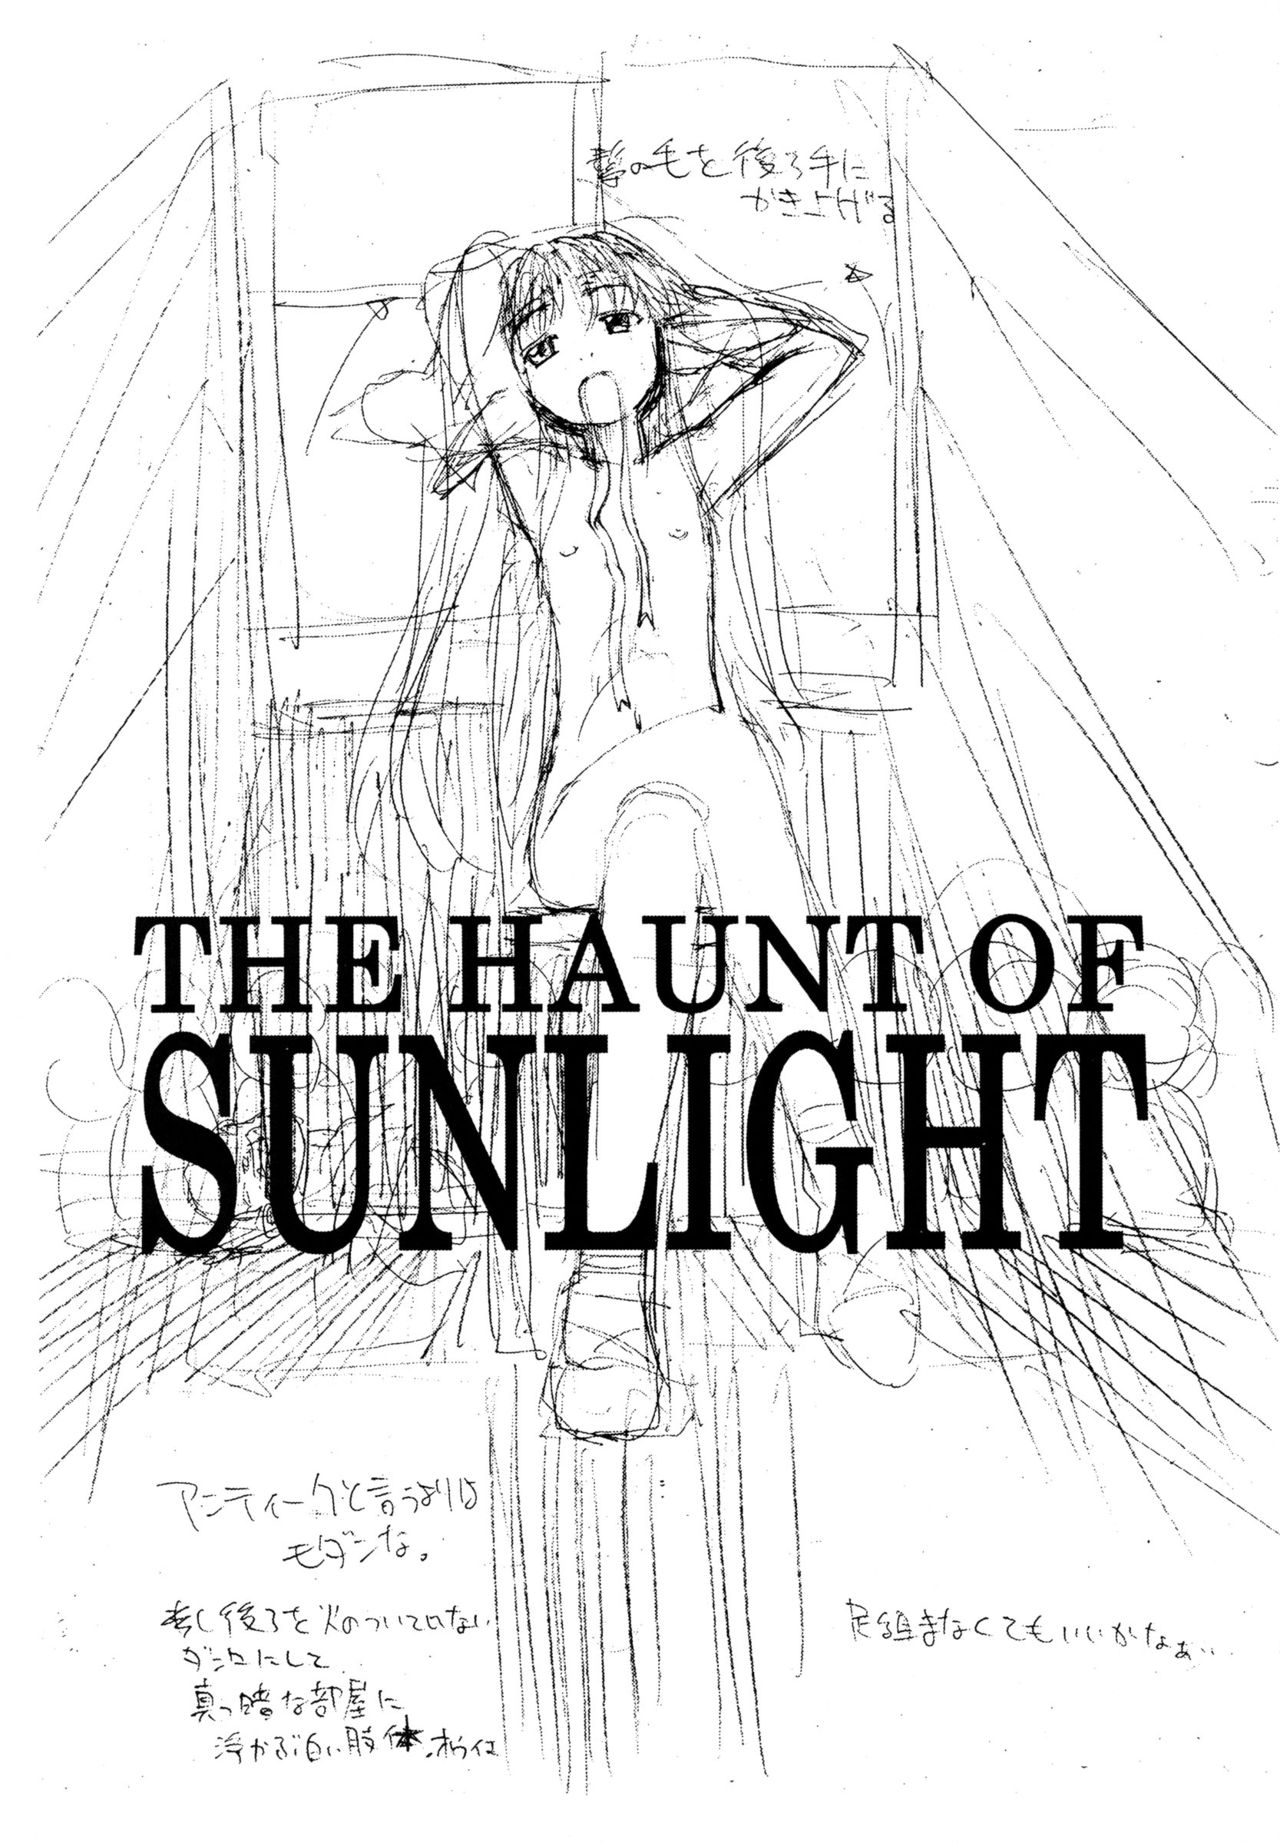 [Shinobi no Yakata (Iwama Yoshiki)] THE HAUNT OF SUNLIGHT (同人誌)[忍ノ館(いわまよしき)] THE HAUNT OF SUNLIGHT